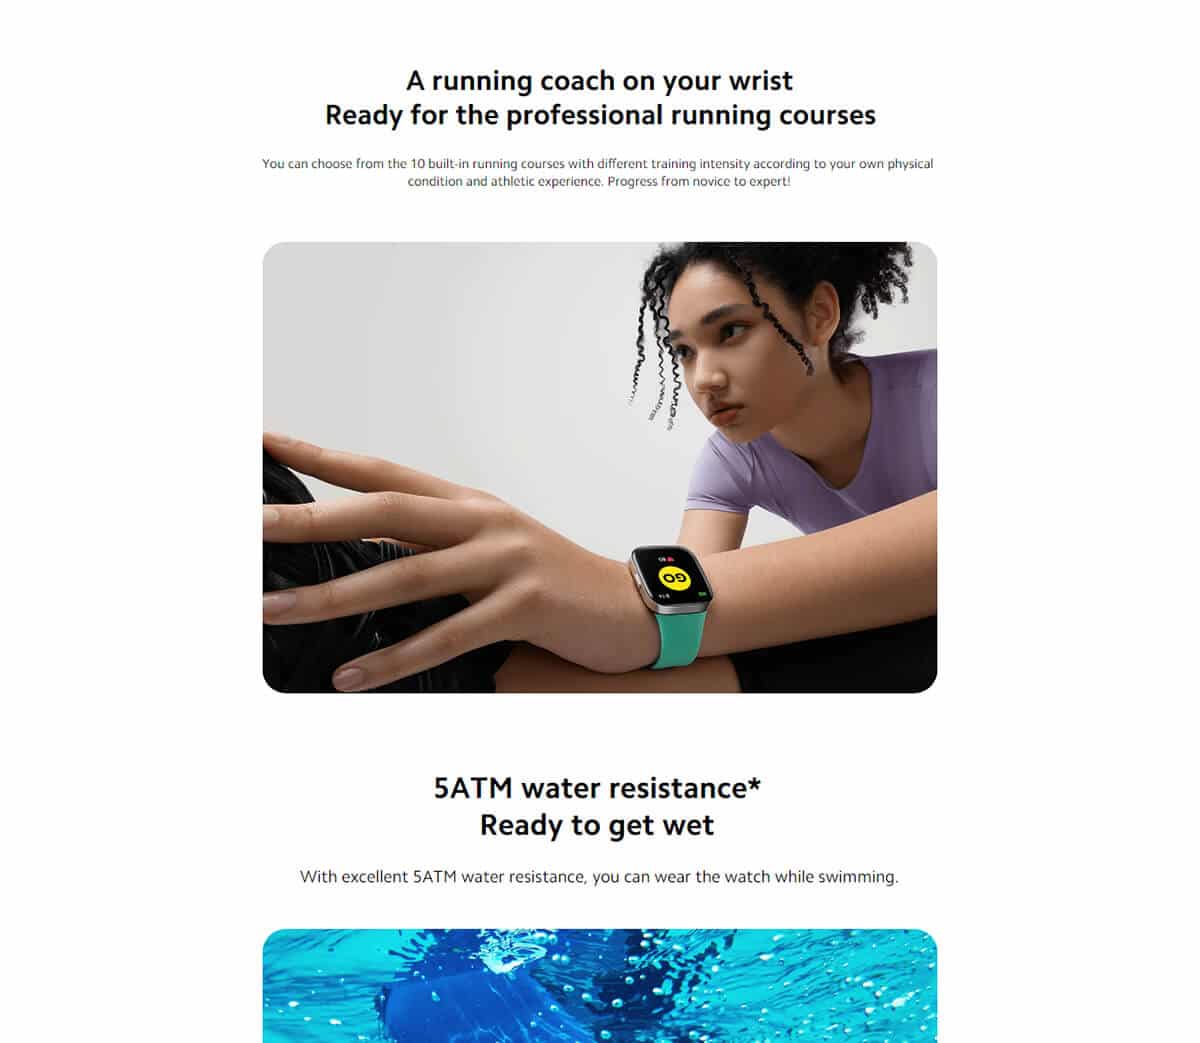 ساعت هوشمند شیائومی مدل Redmi Watch 3